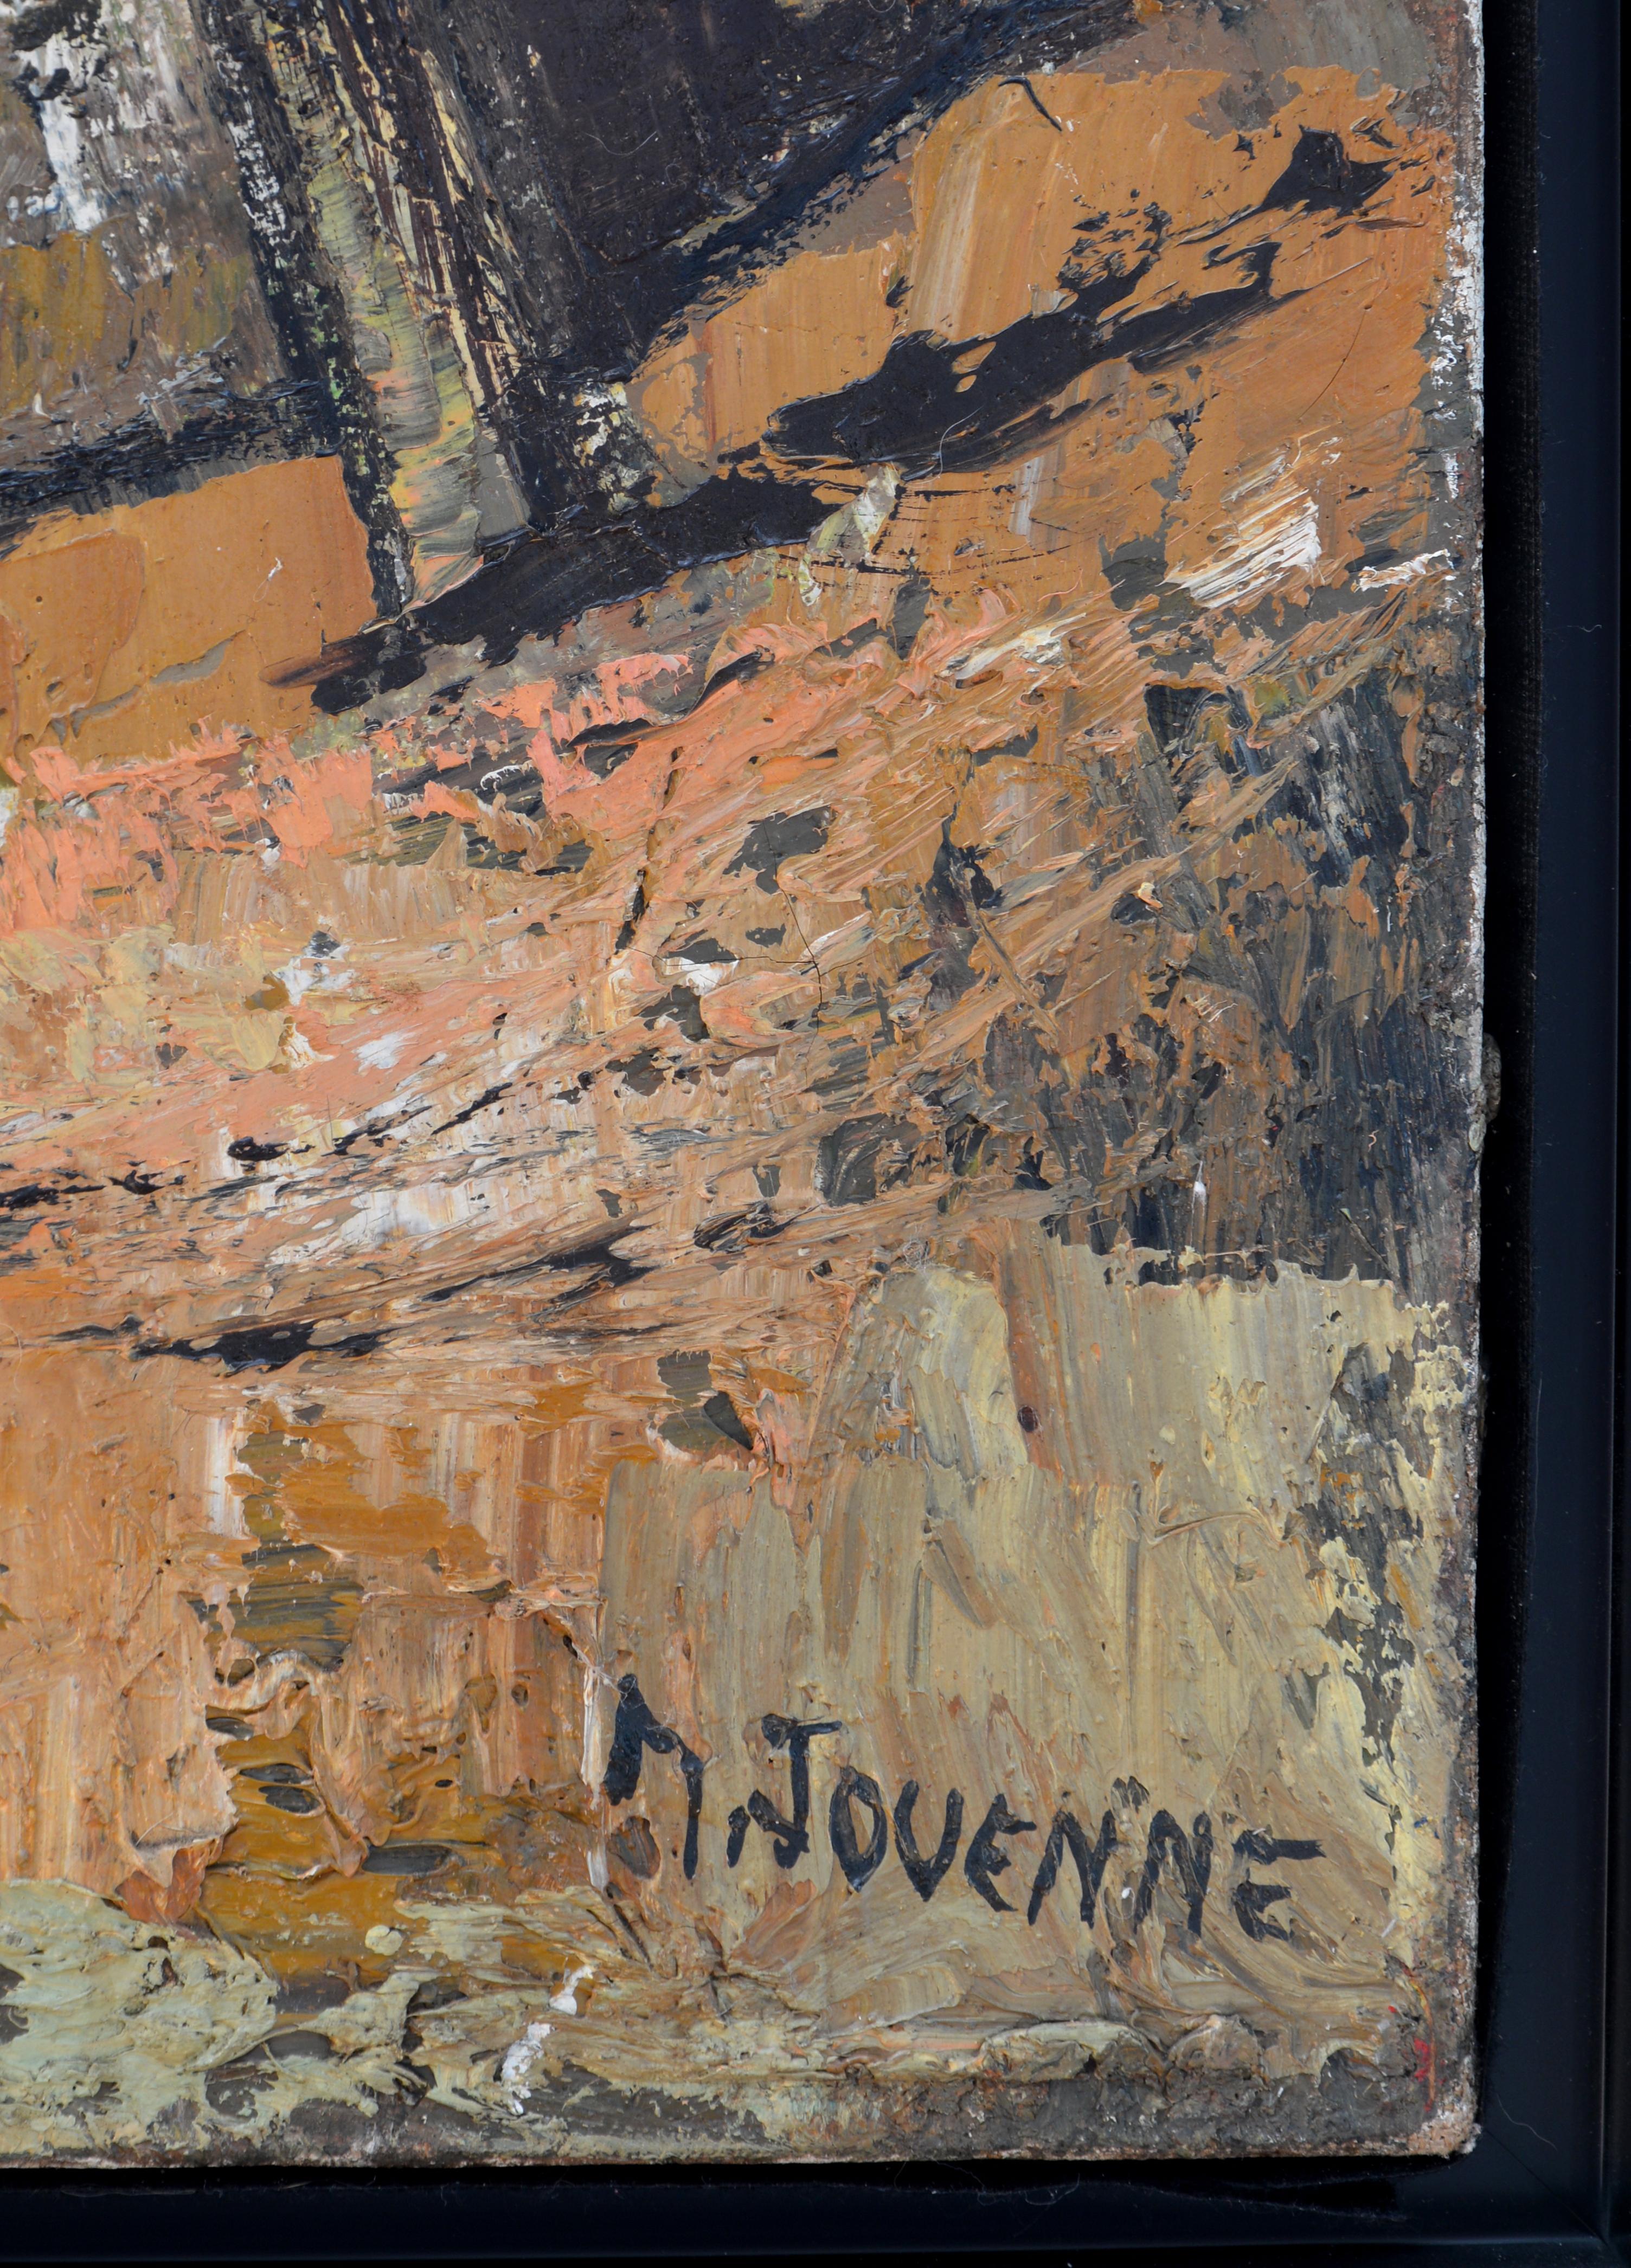 Village of Provence, huile sur toile - Néo-expressionnisme Painting par Michel Jouenne